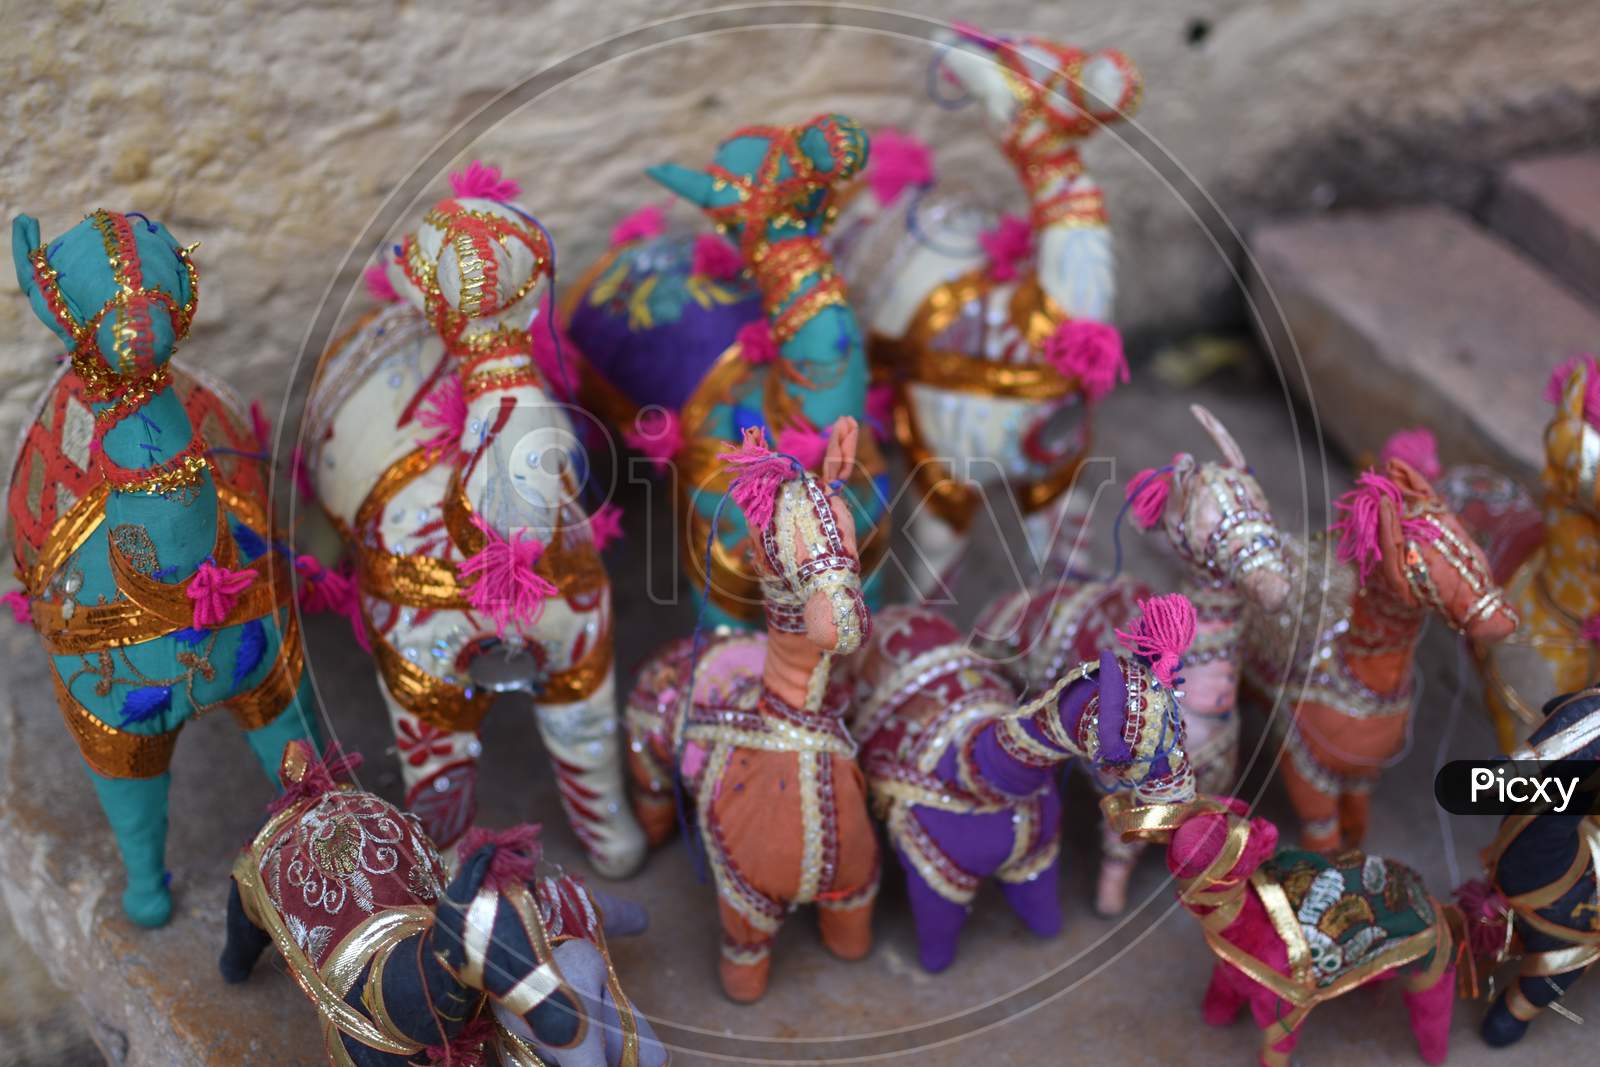 Handicrafts Of Jaisalmer,Rajasthan Hanging On The Roadside Shops